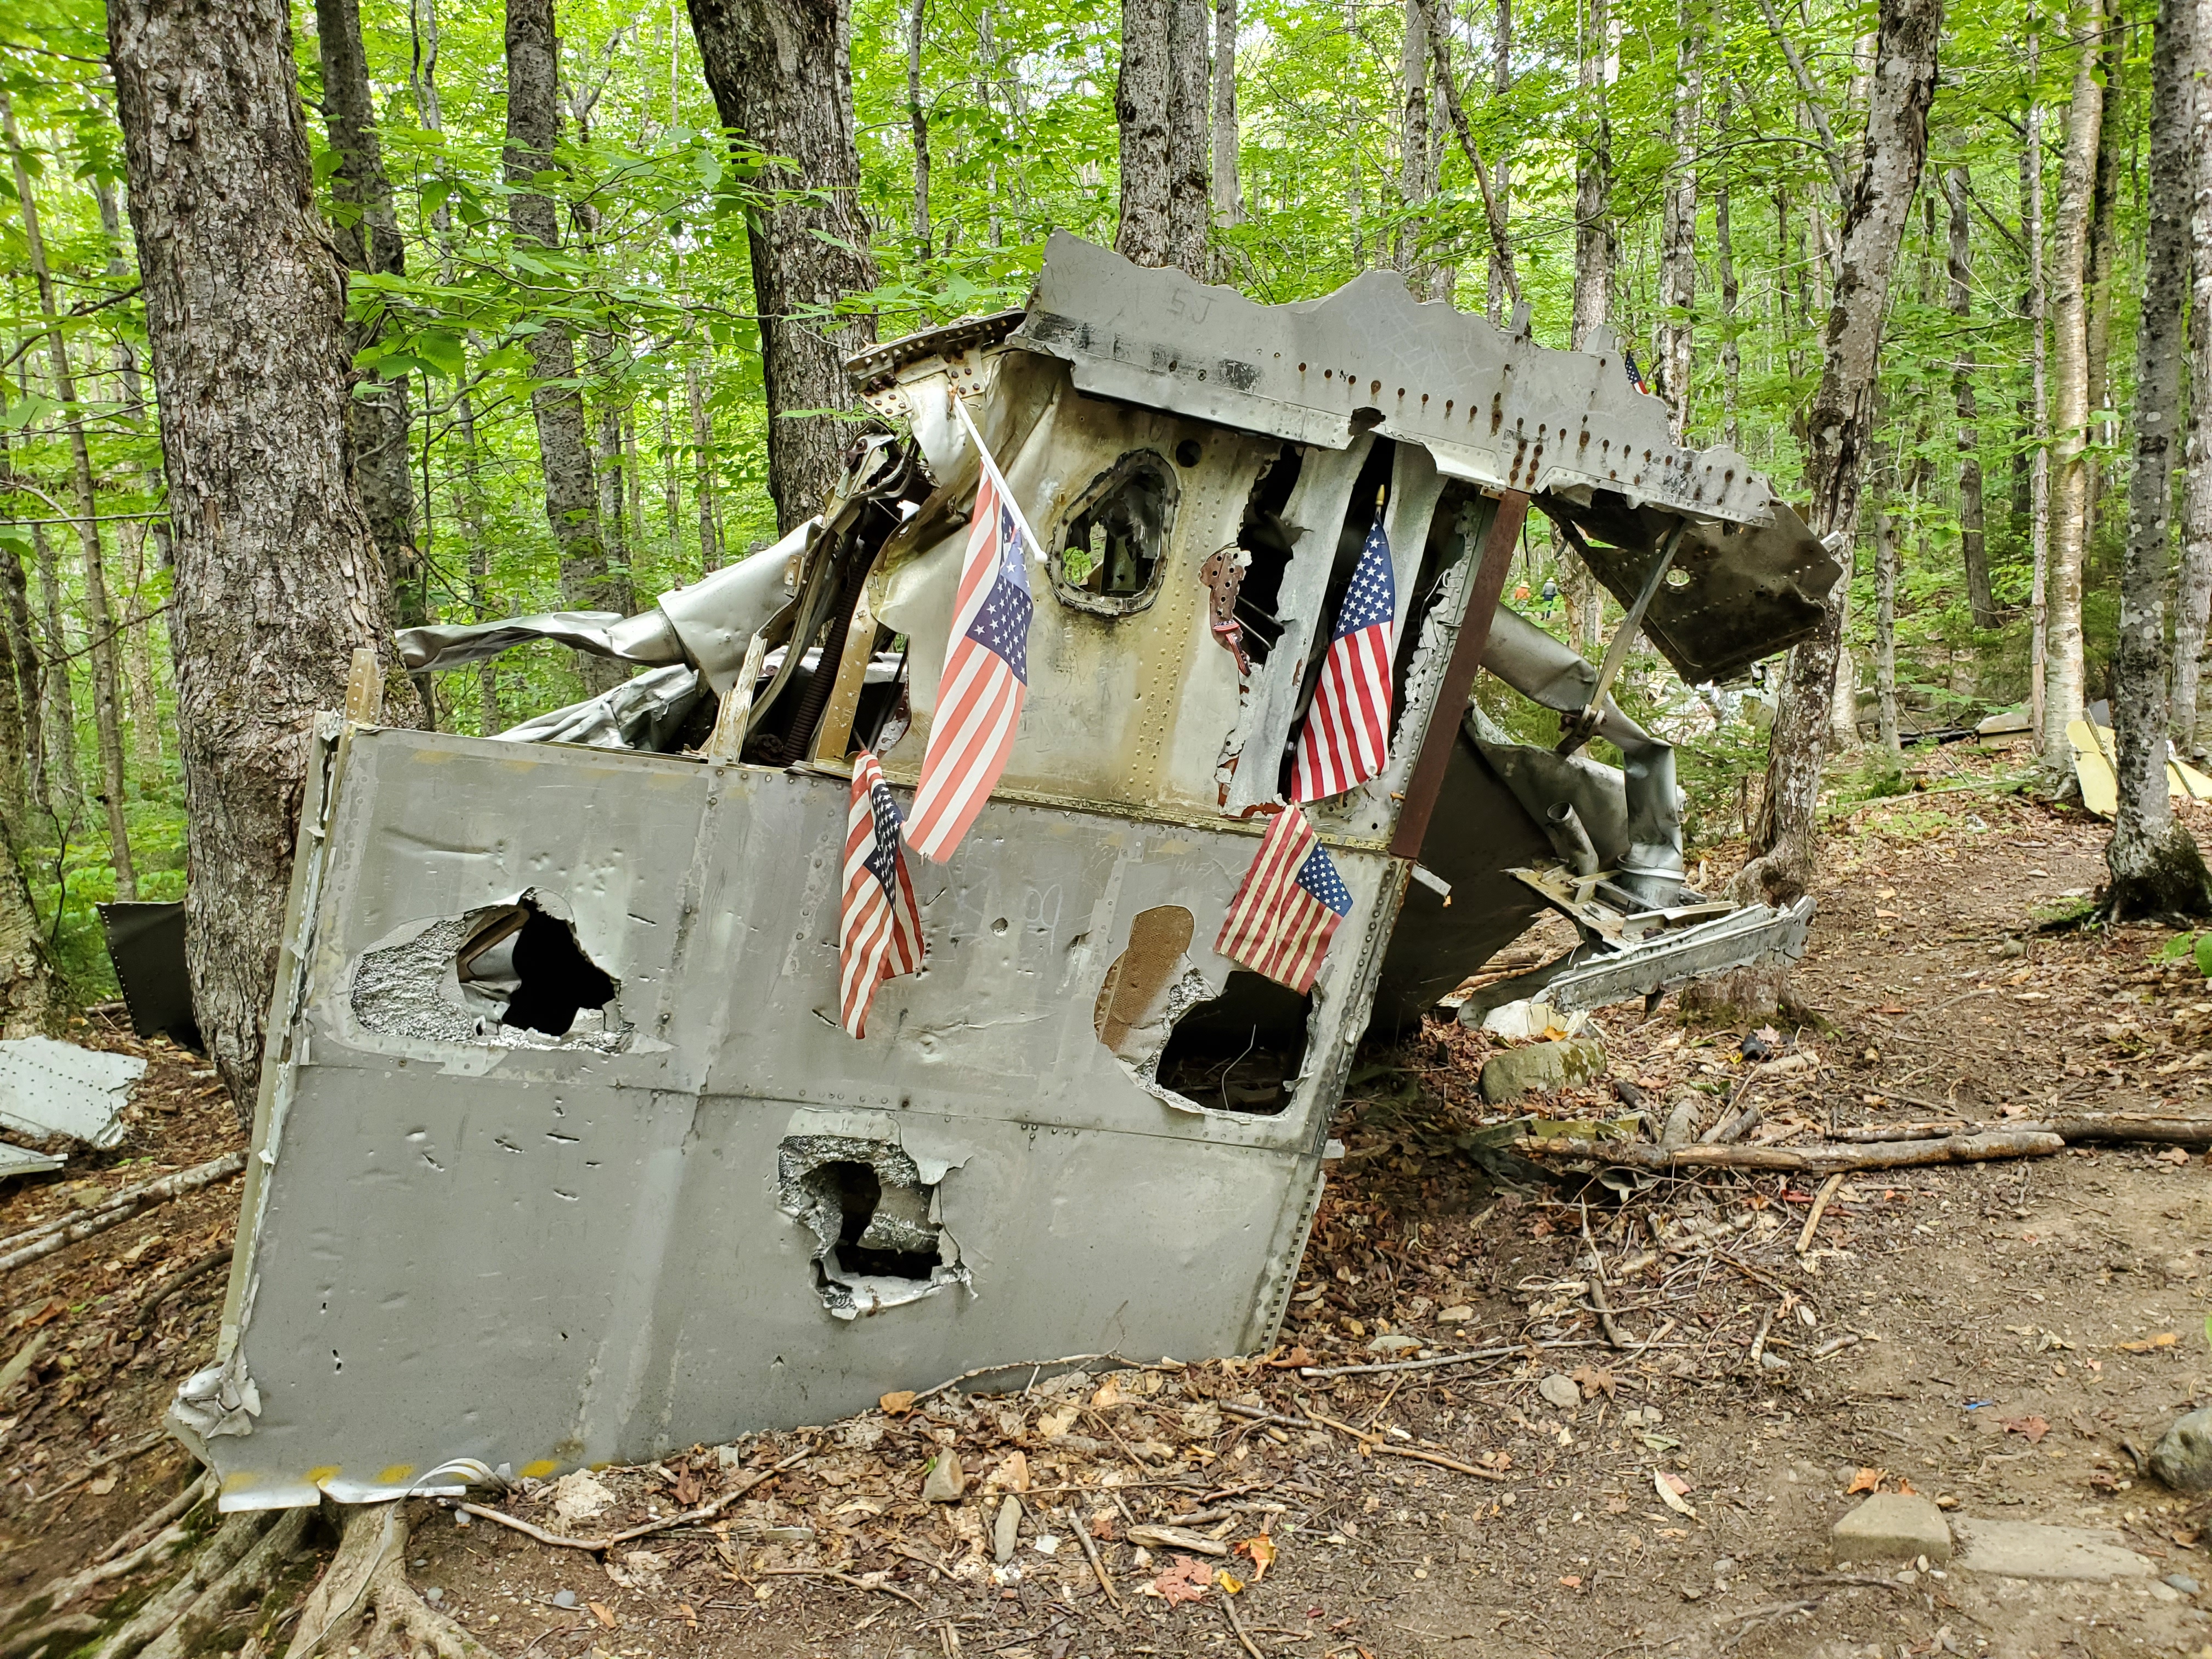 B52 bomb site memorial